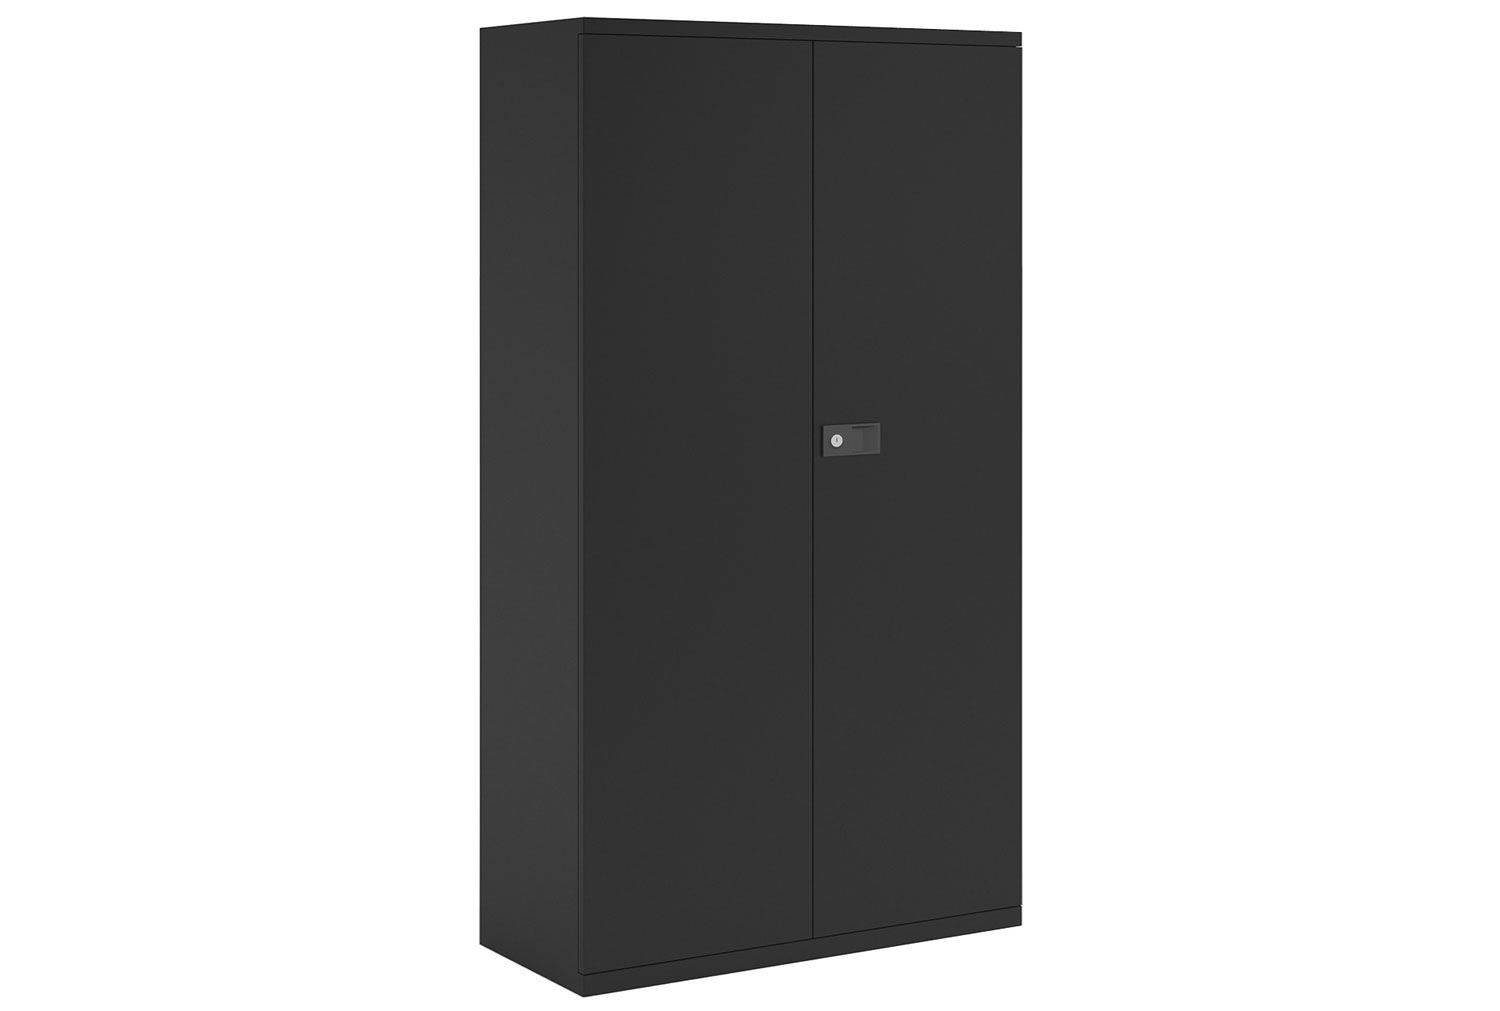 Bisley Economy Double Door Steel Office Cupboards, 3 Shelf - 91wx40dx181h (cm), Black